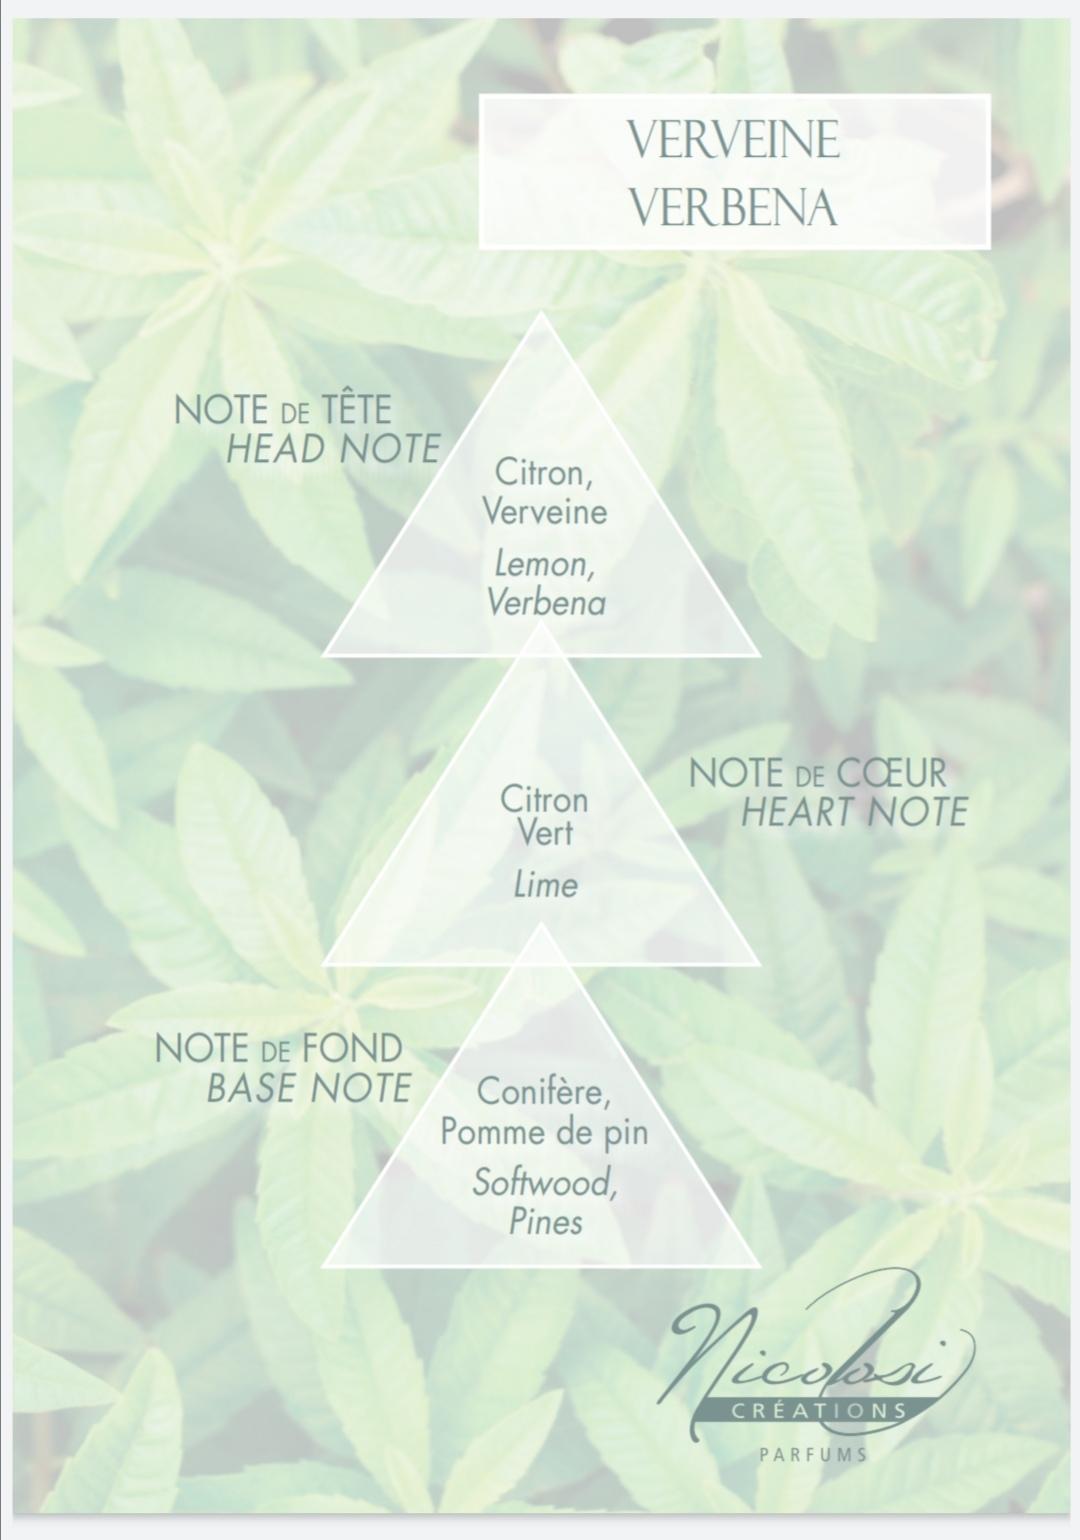 Verbena scent pyramid